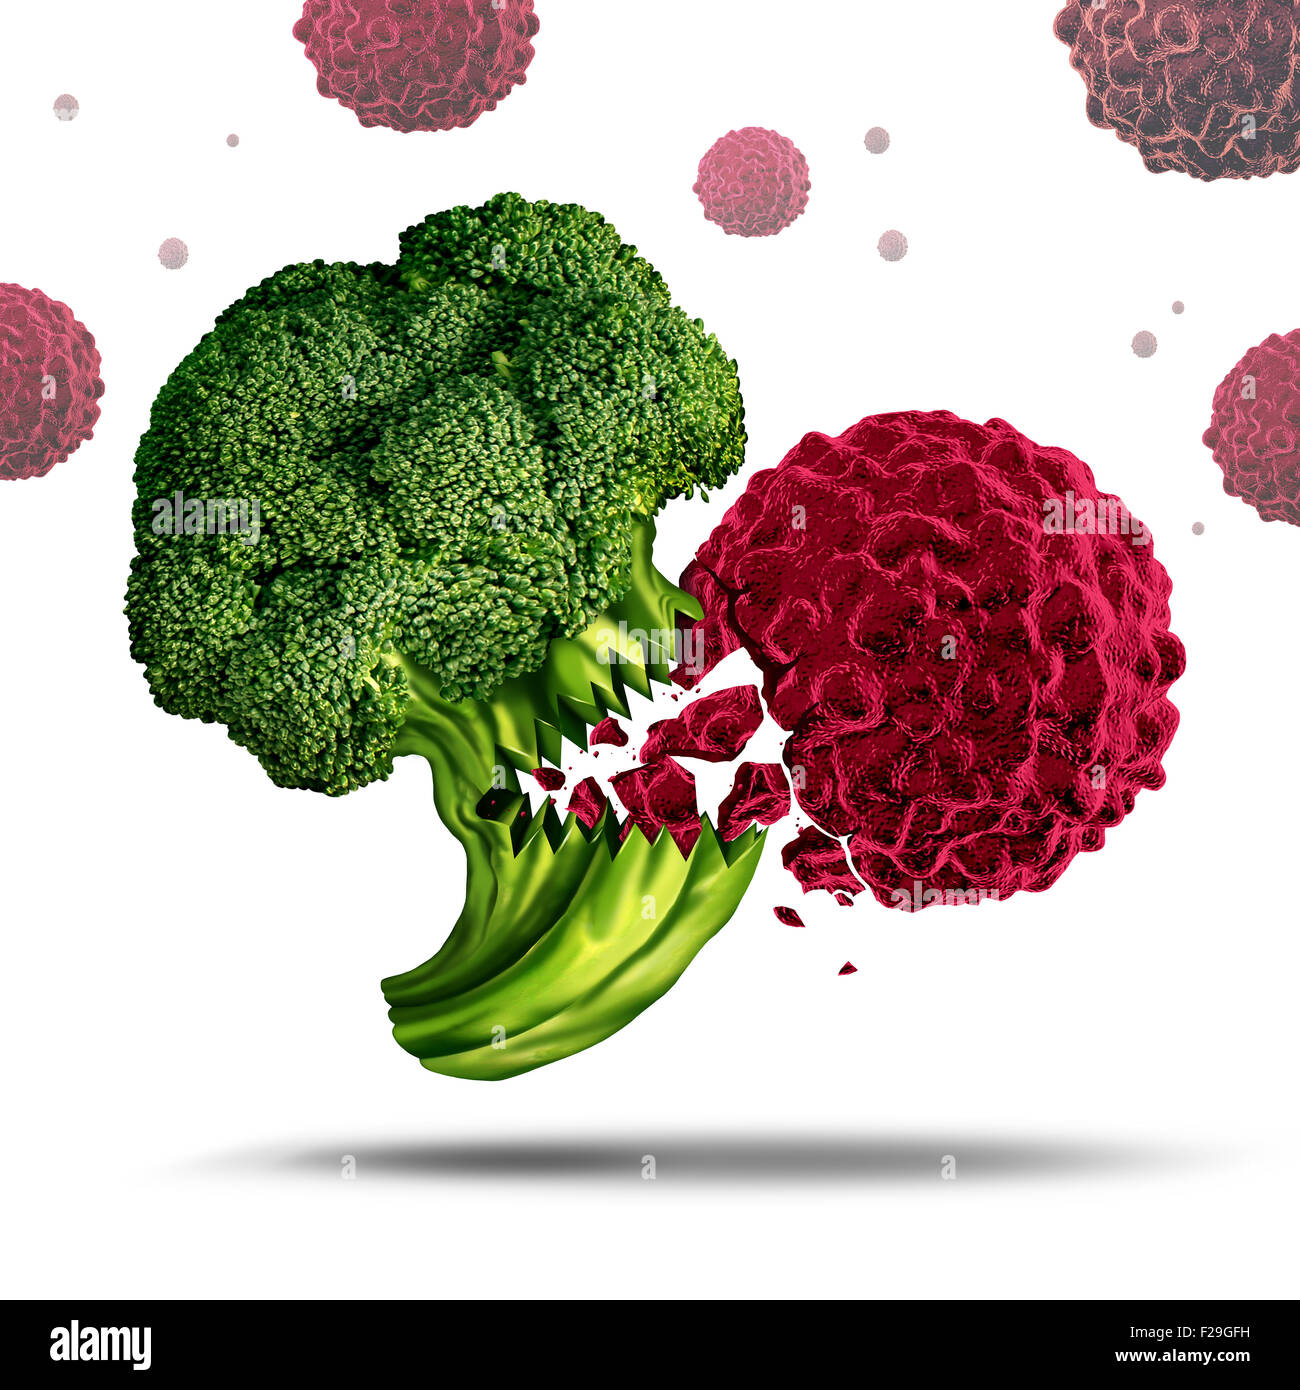 Super concetto o super simbolo di cibo come un carattere di broccoli mangiare una cellula di cancro per prevenire la malattia come un nutriente vegetale ricco di benefici per la salute umana e di vivere uno stile di vita sano da mangiare nutriente pasti medicinali. Foto Stock